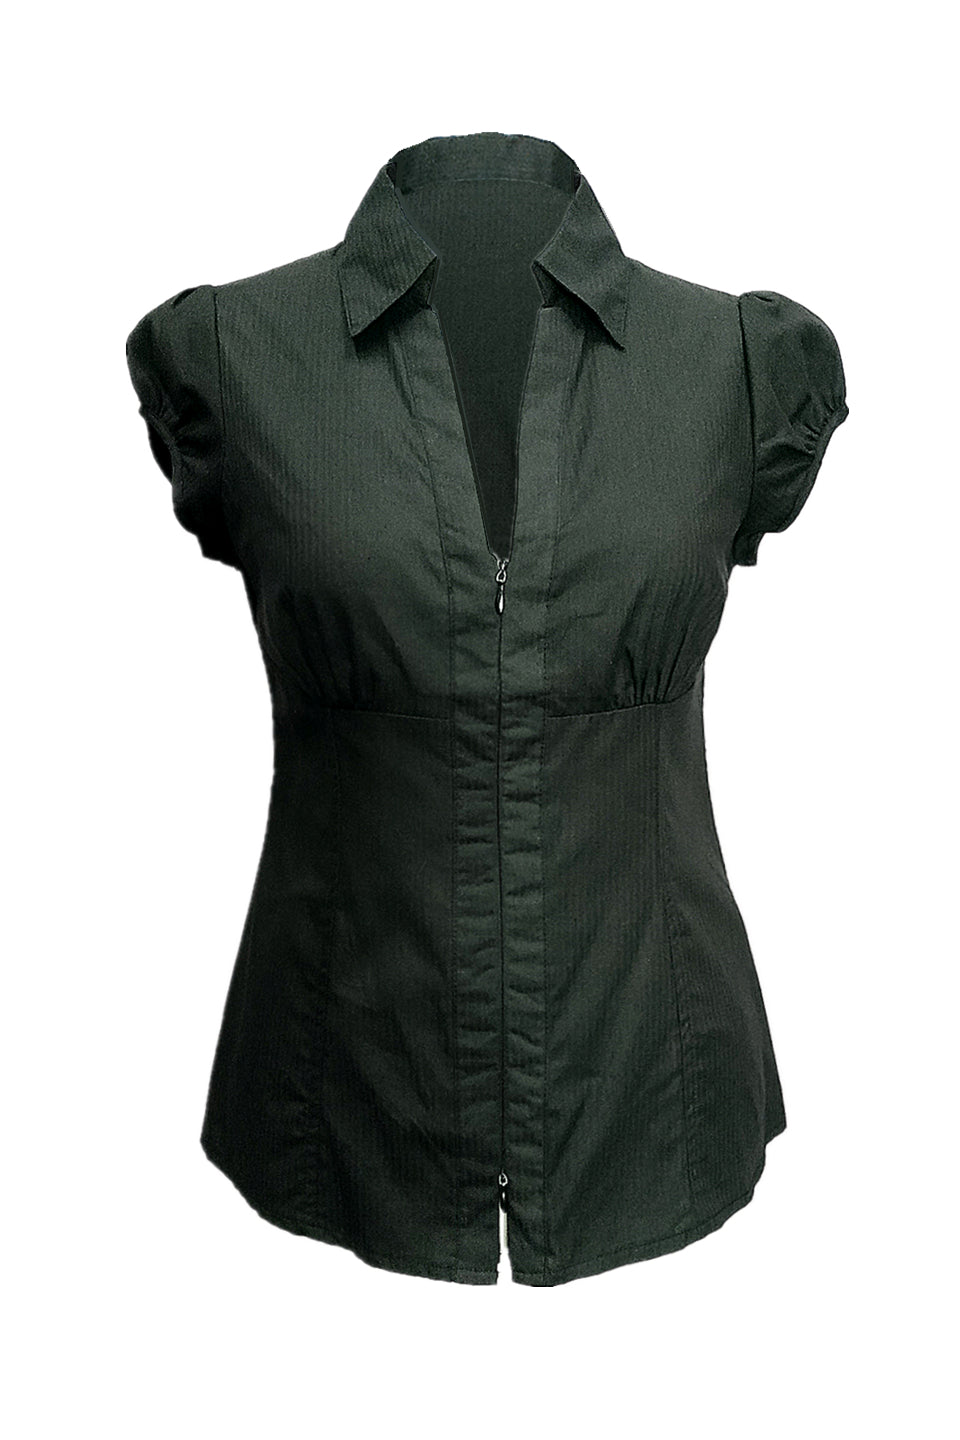 Ada short sleeves zip shirt in black